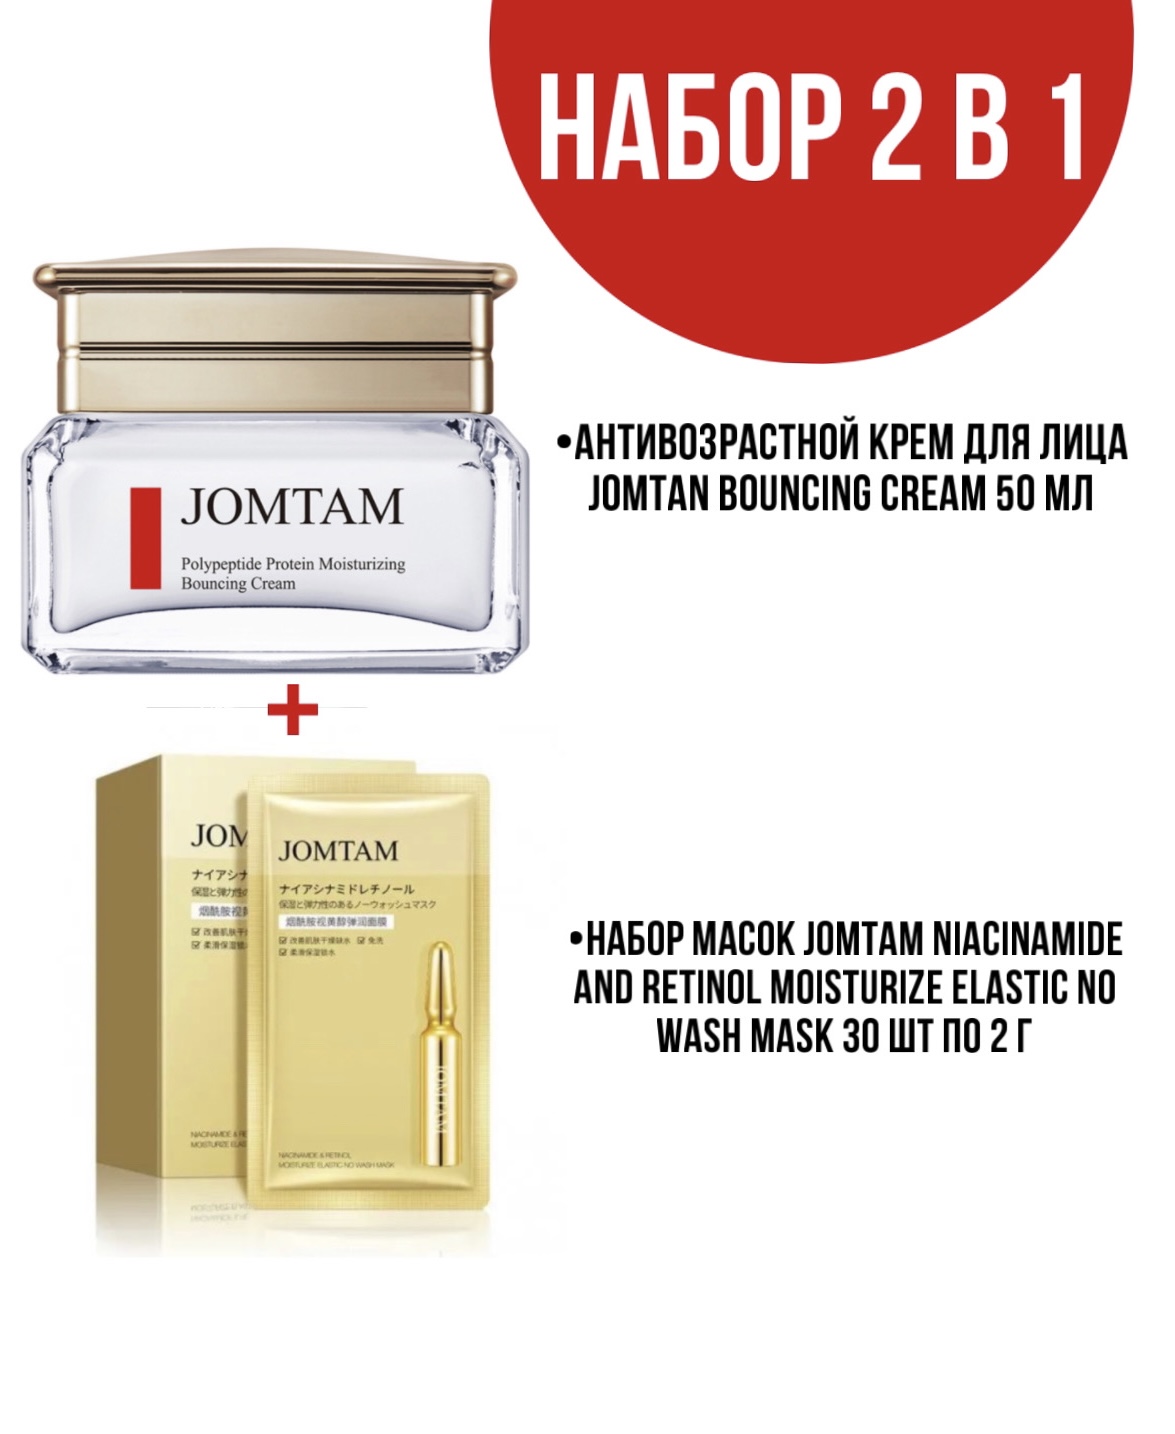 Крем Jomtam Bouncing Cream для лица 50 мл и набор масок Jomtam Niacinamide 30 шт по 2 г крем для век jomtam с массажером и экстрактом красной икры